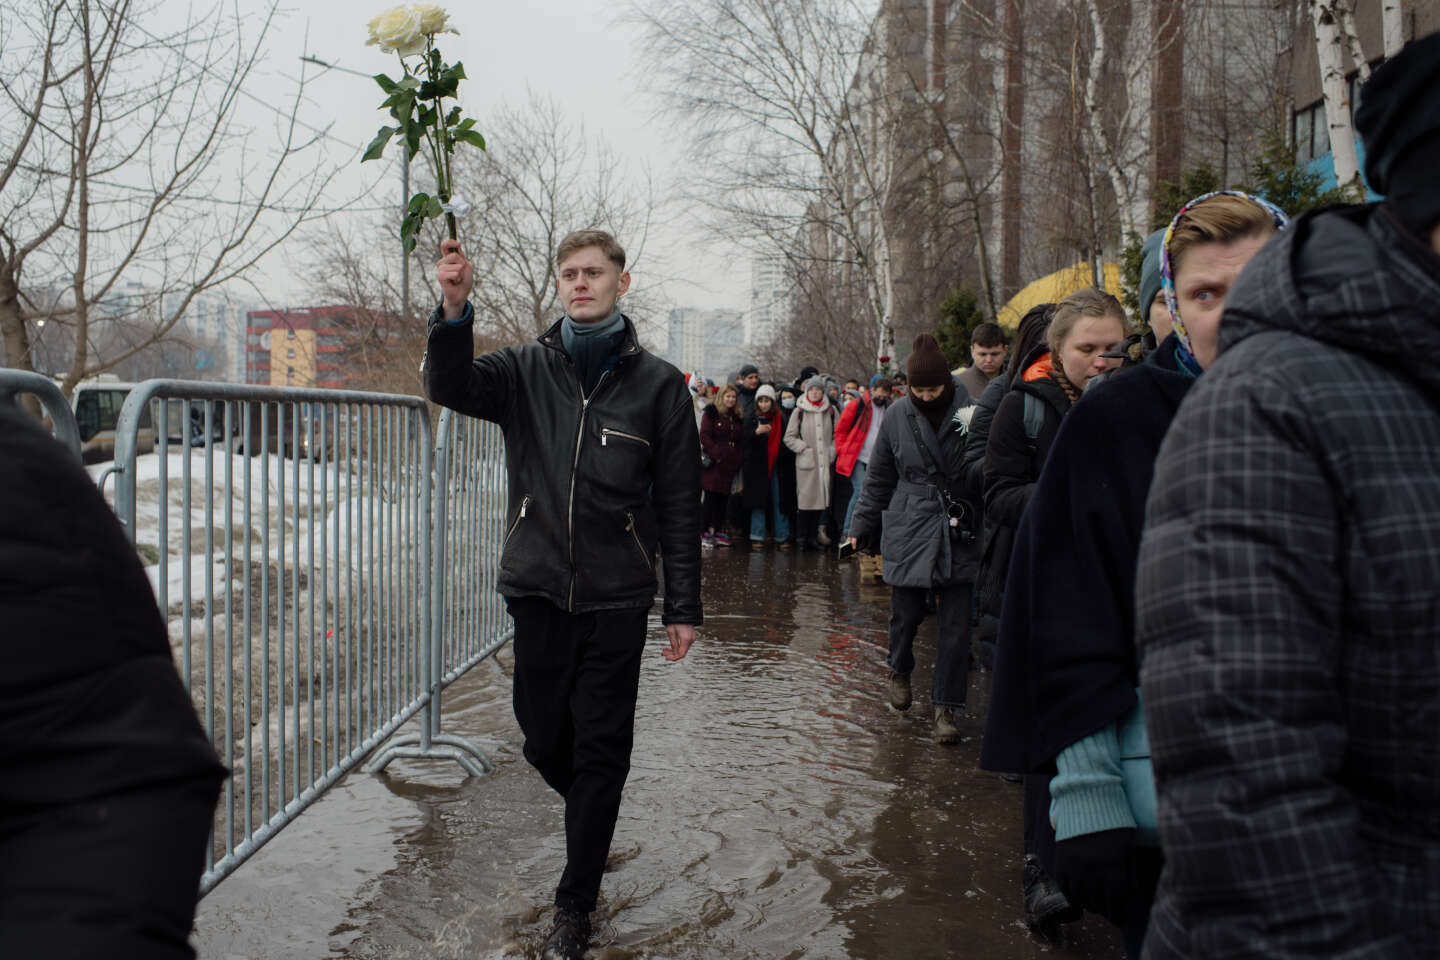 Después del funeral de Navalny, seguramente enfrentaremos el endurecimiento del Kremlin